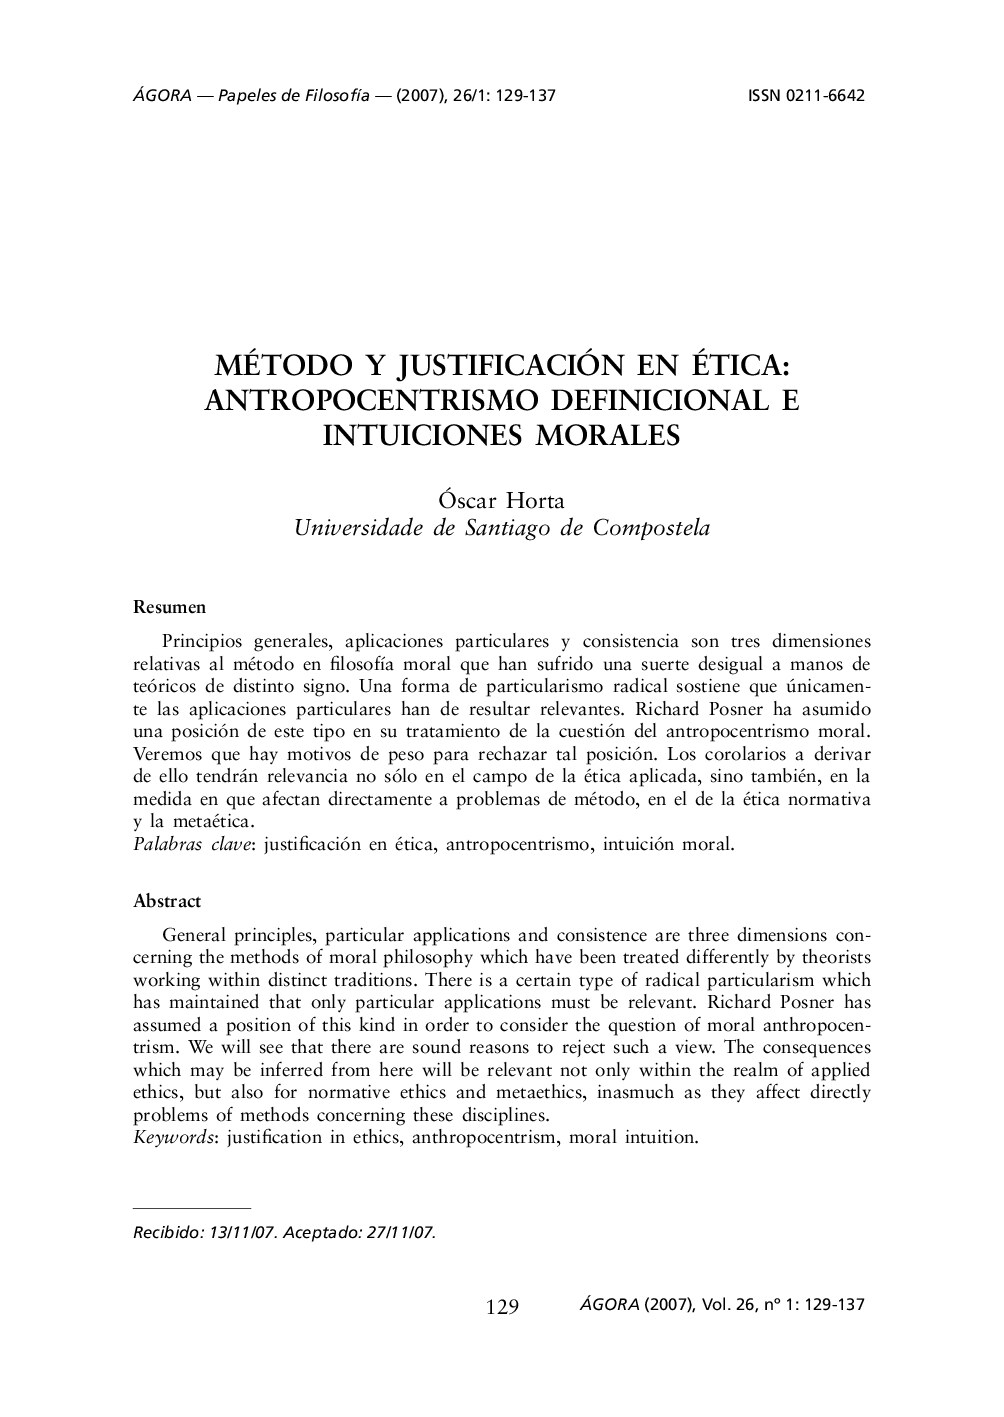 Método y justificación en ética: Antropocentrismo definicional e intuiciones morales